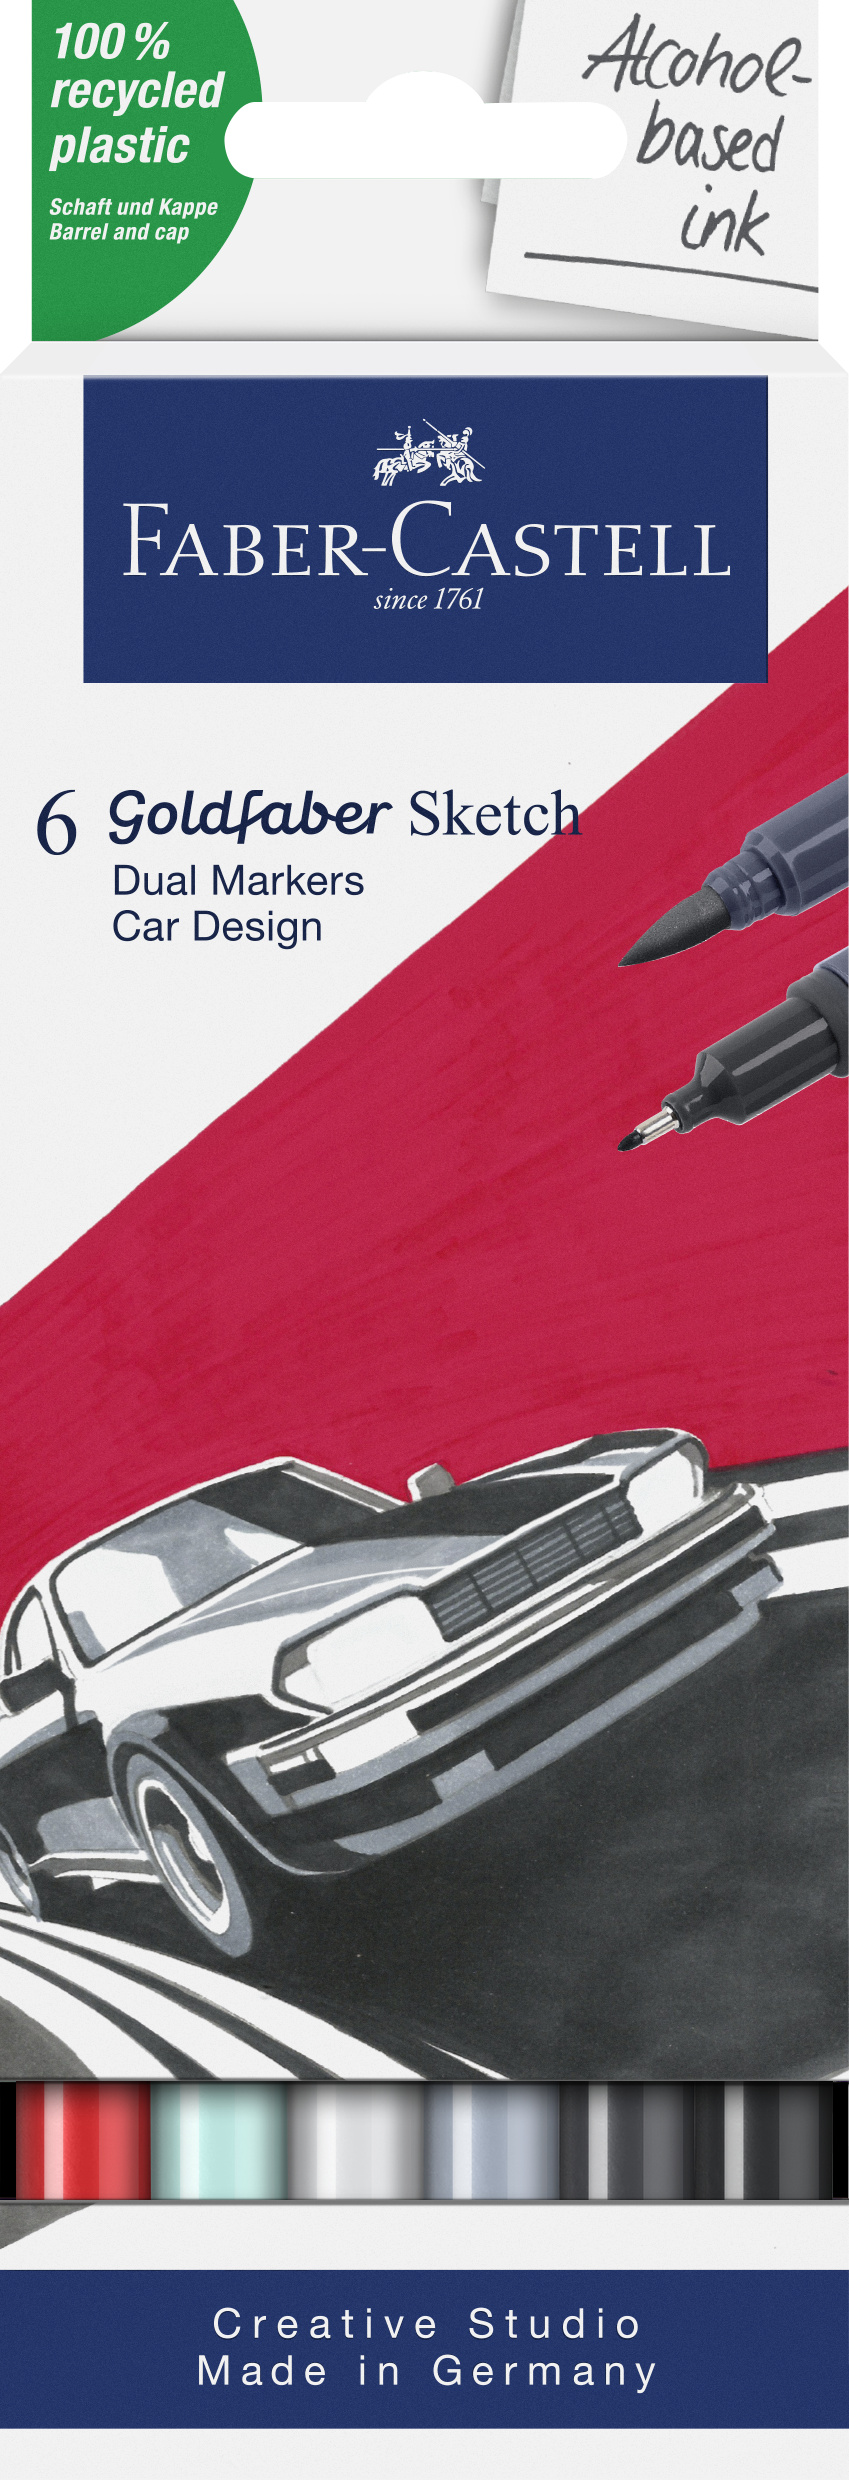 Faber-Castell_Goldfaber Sketch Marker, 6er set, Car design_EUR 18,00